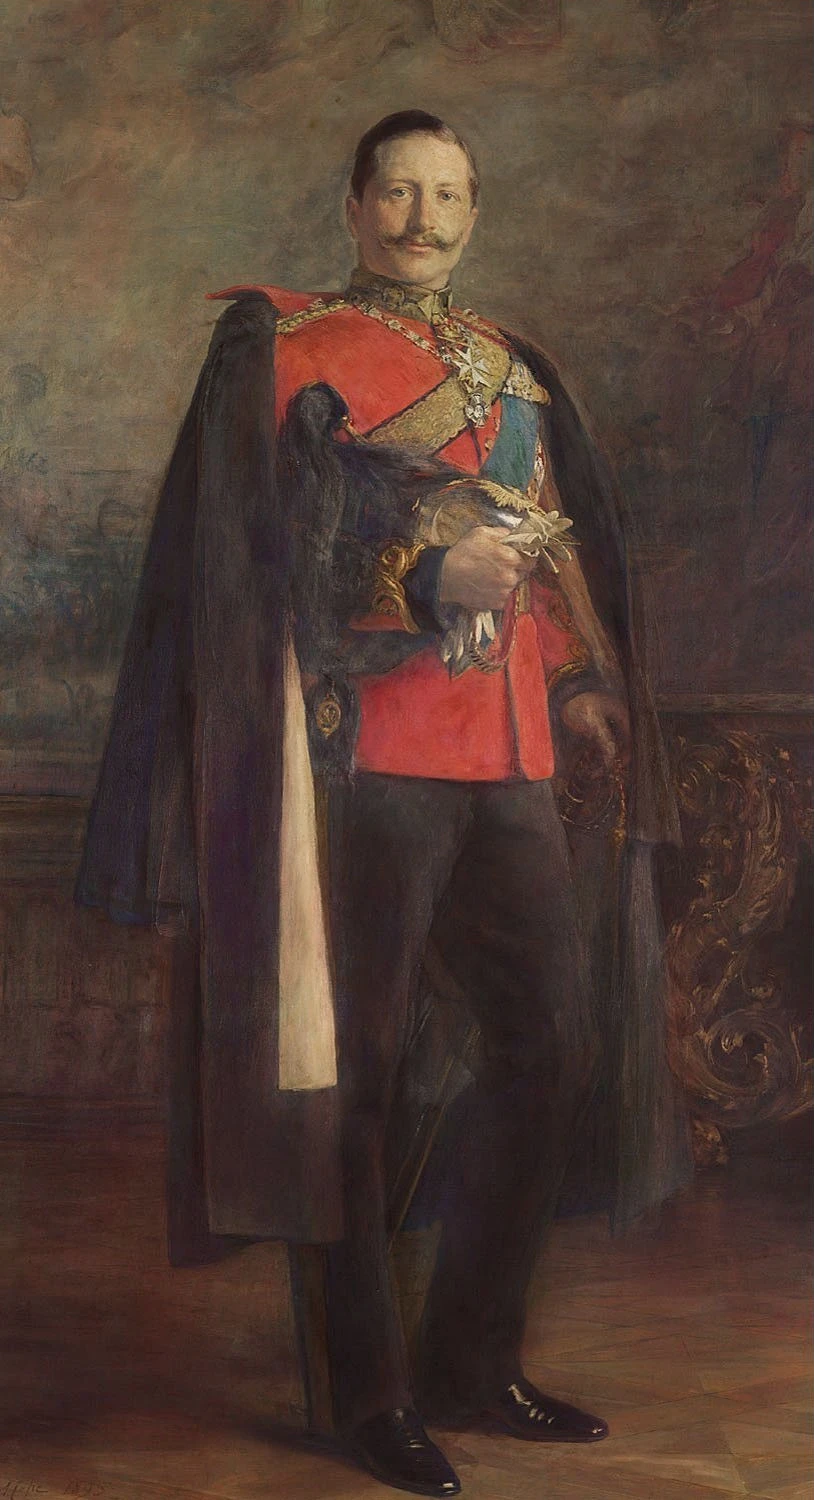 Illustration choisie par monsieurdefrance.com L'empereur Guillaume II en 1885 par Arthur Stockdale Cope. Lempereur a beaucoup aimé Metz qu'il a voulu embellir. 